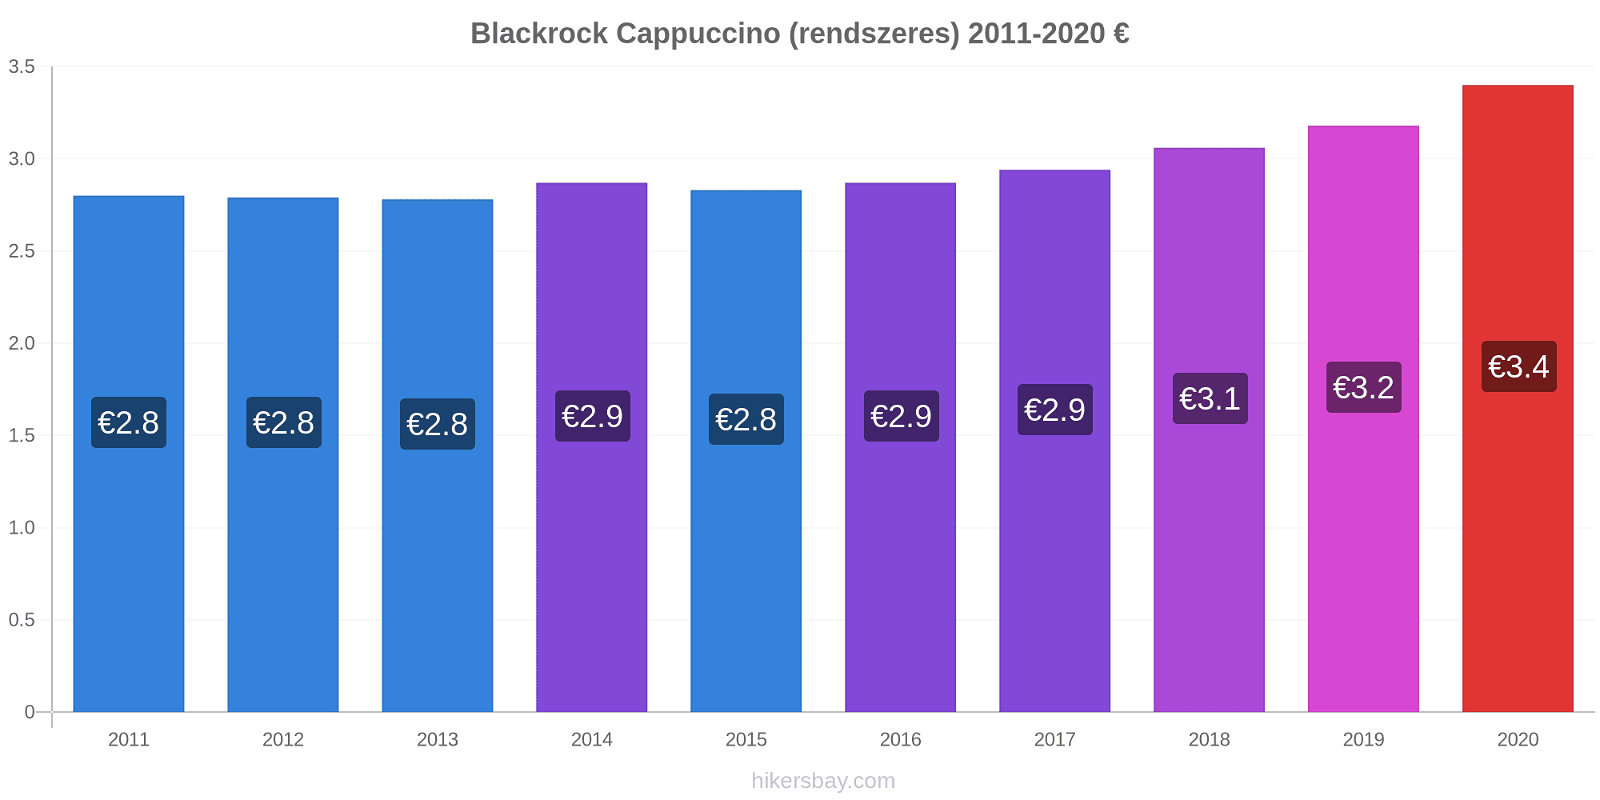 Blackrock árváltozások Cappuccino (rendszeres) hikersbay.com